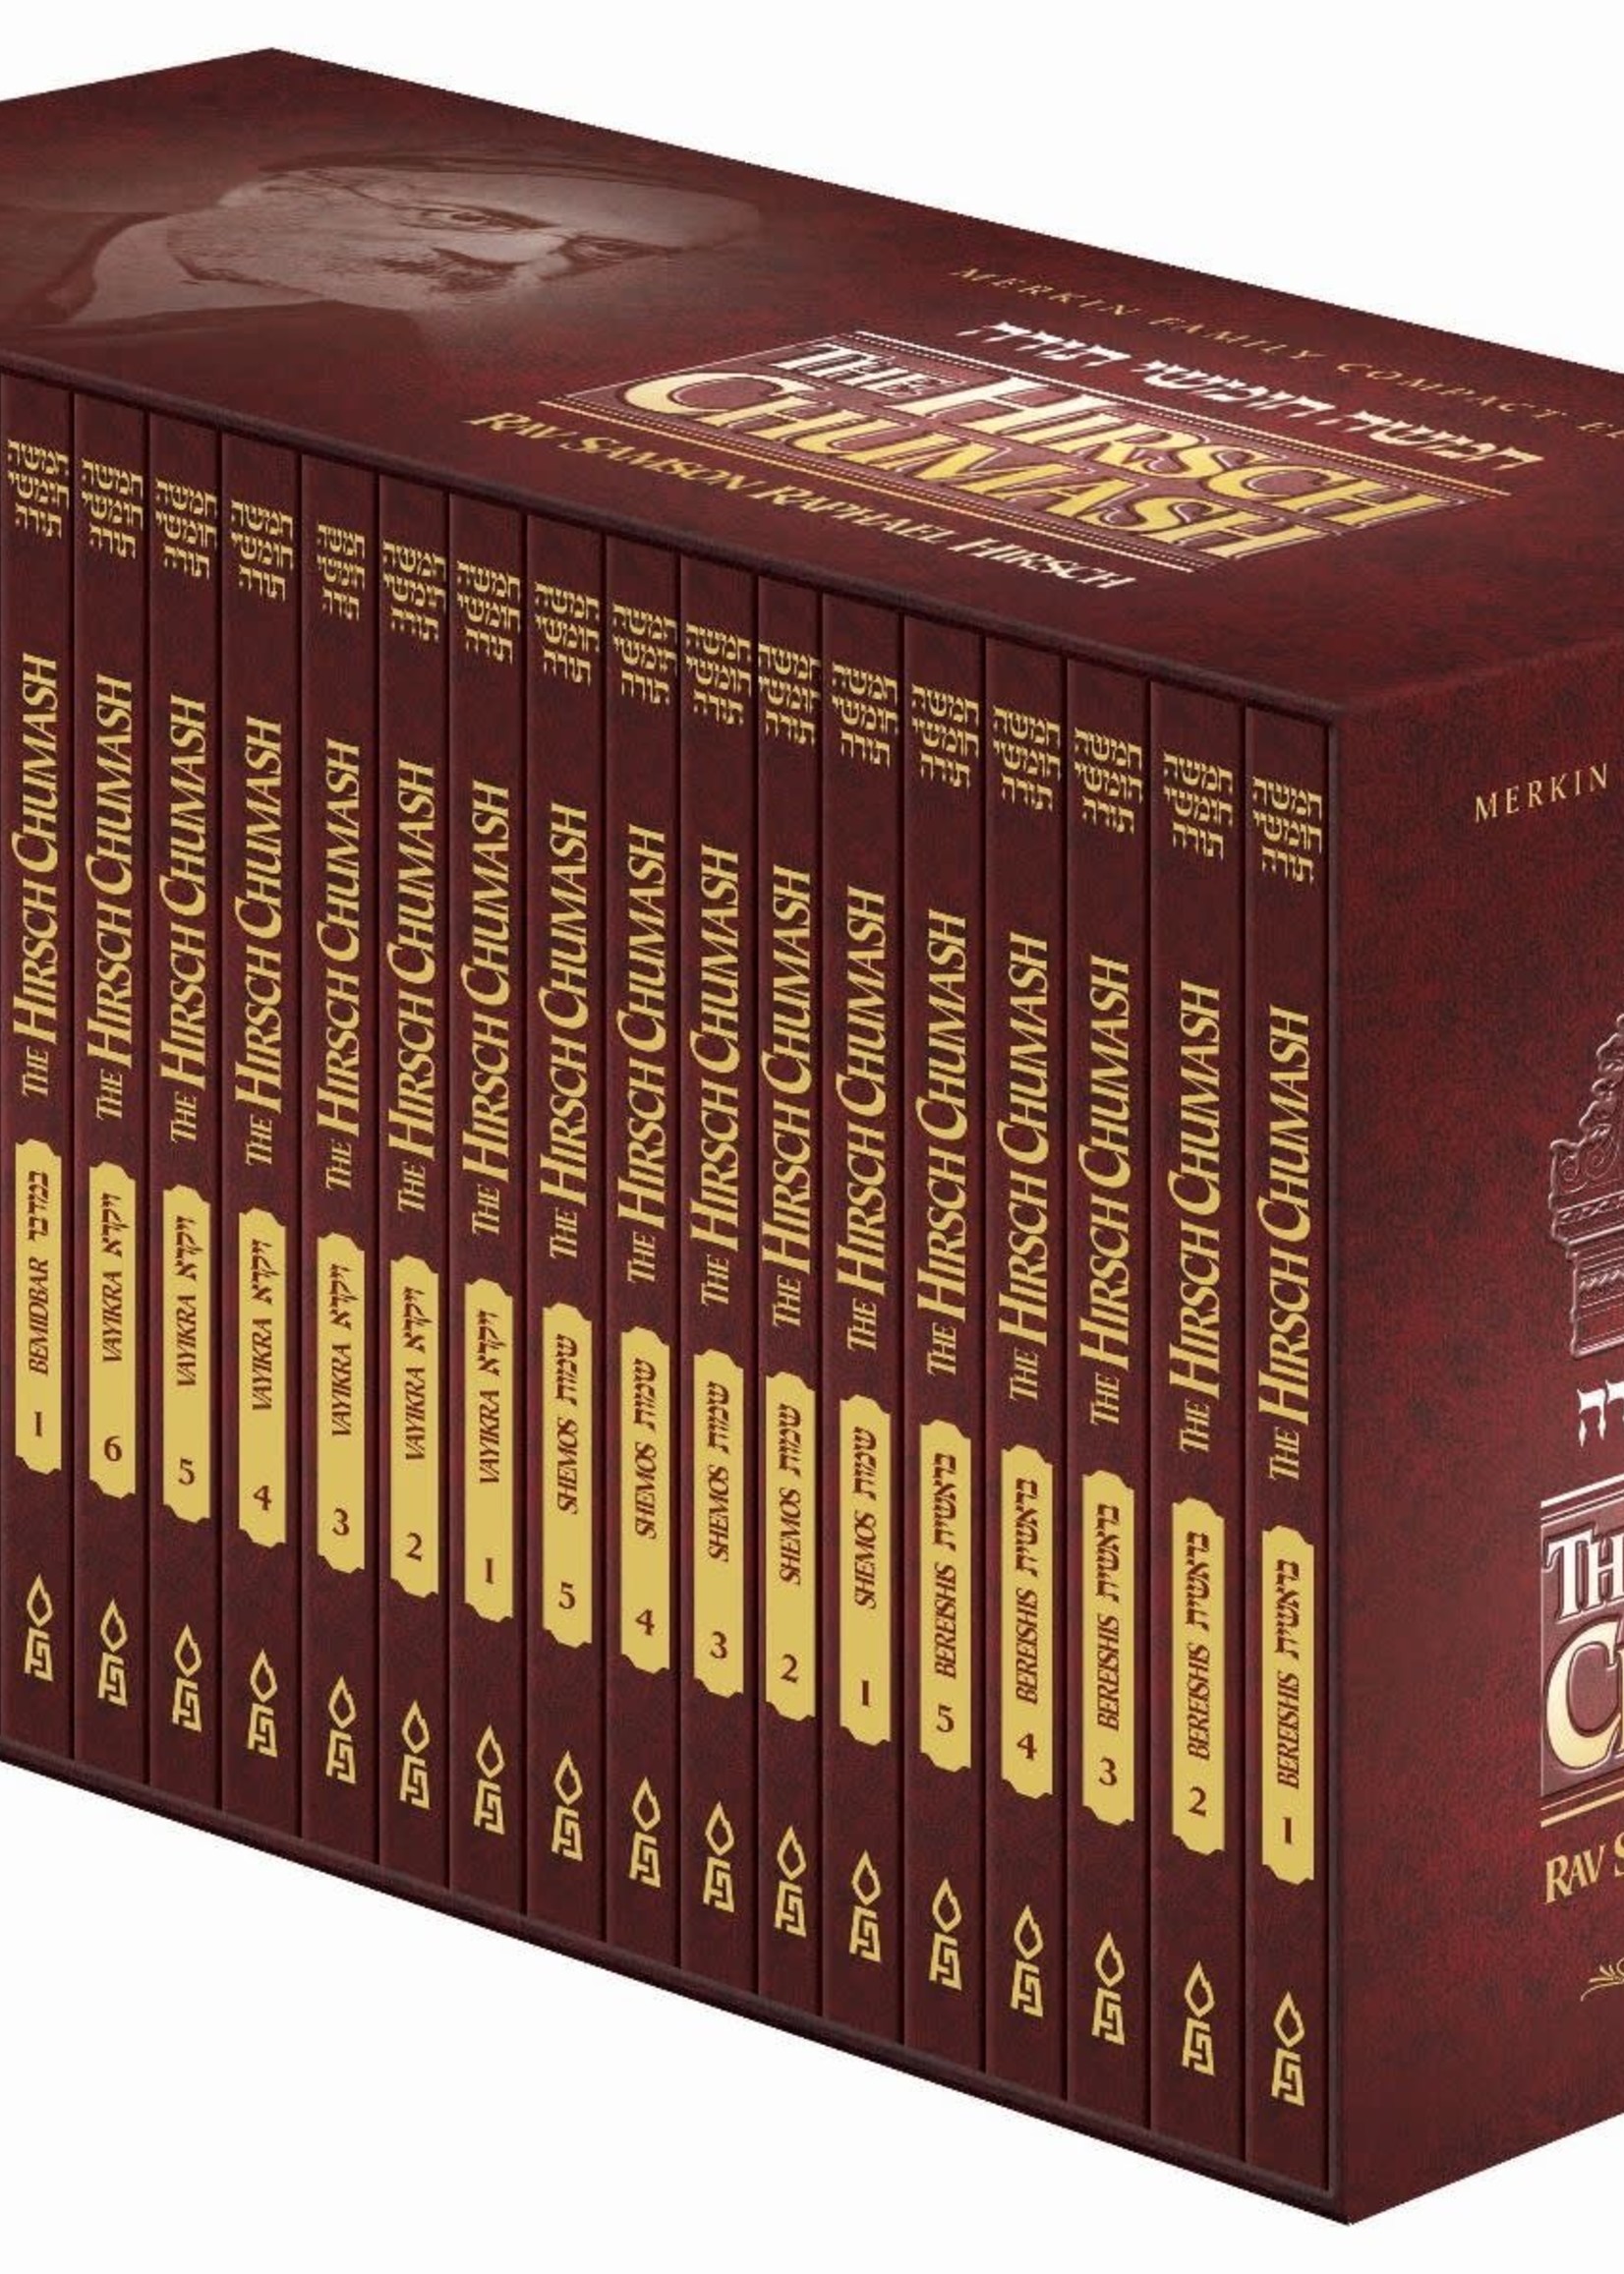 Hirsch Chumash - Compact edition, 24 volumes Boxed Set